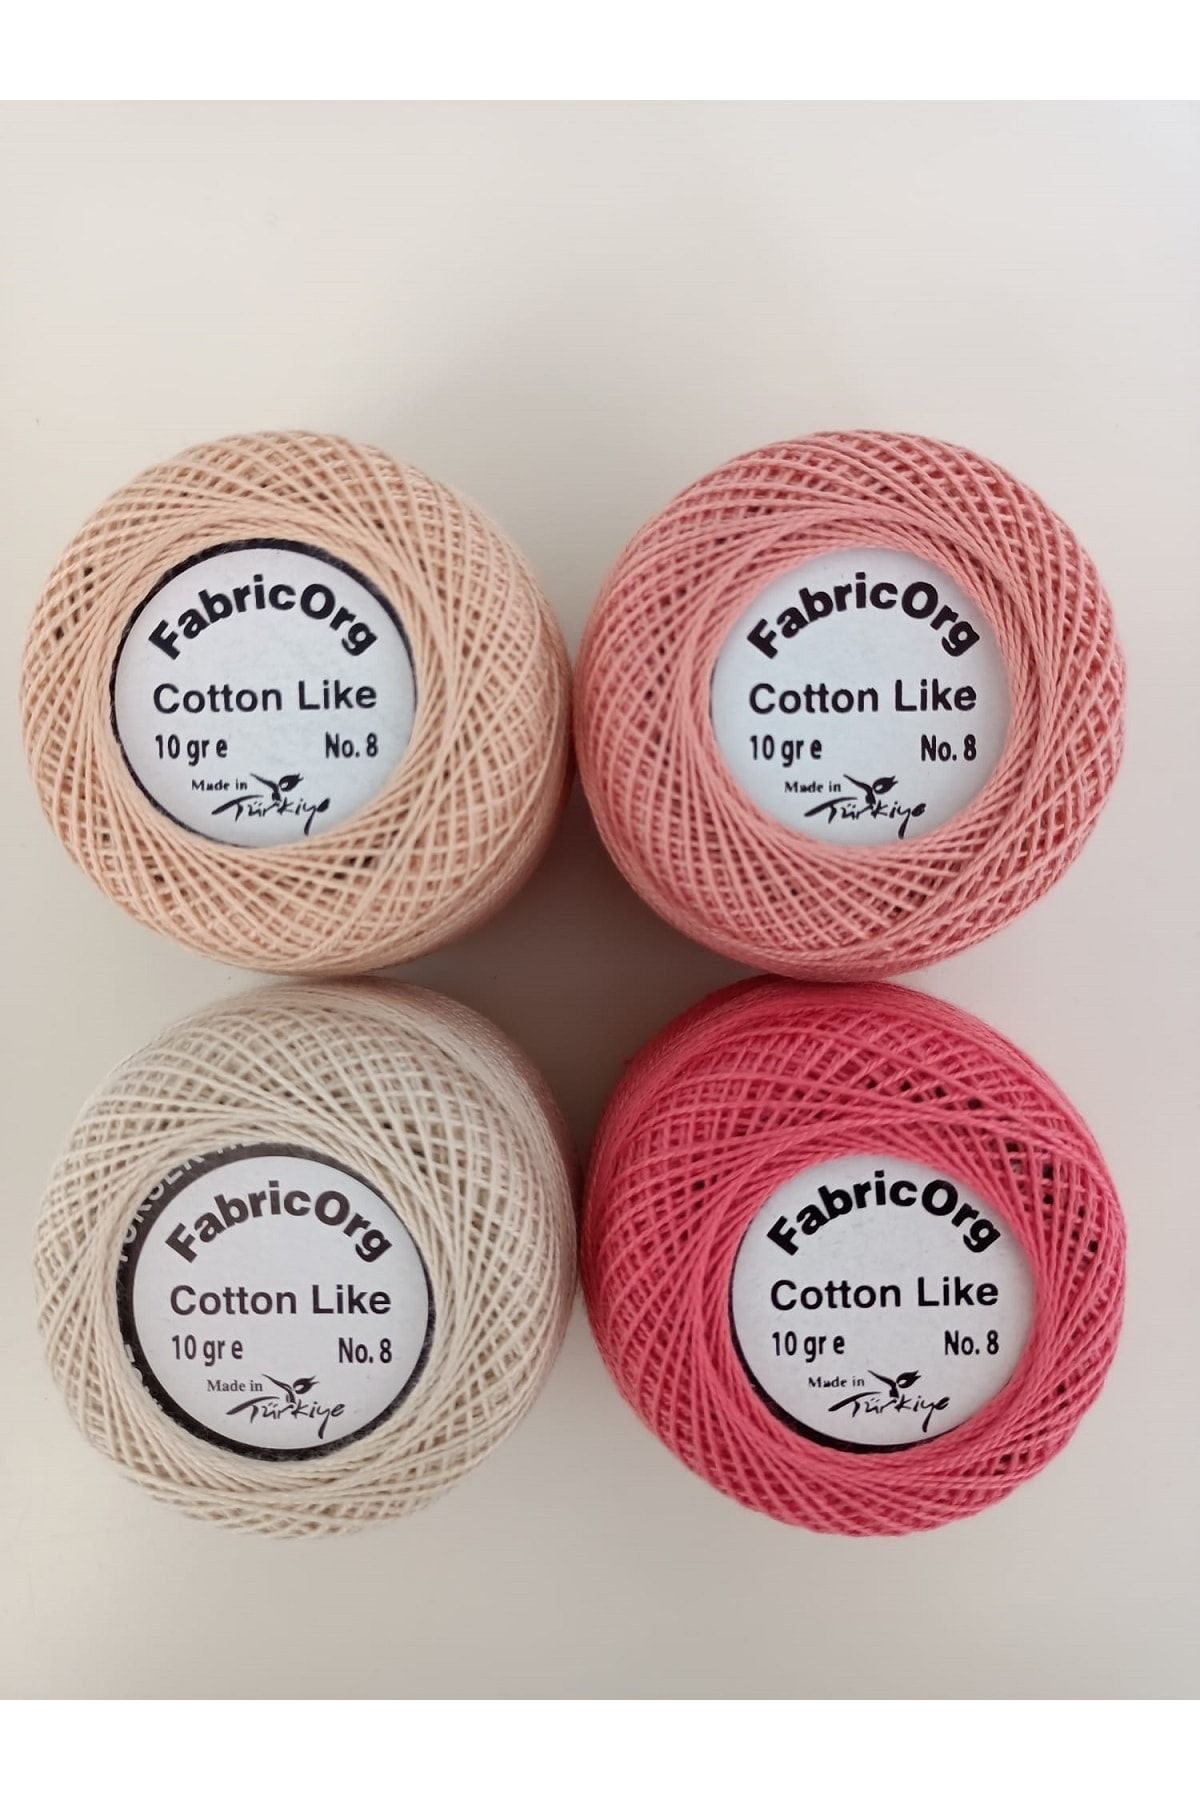 fabricorg Cotton Like Etamin-kanaviçe 4'lü Iplik Seti (10 GR-NO.8)